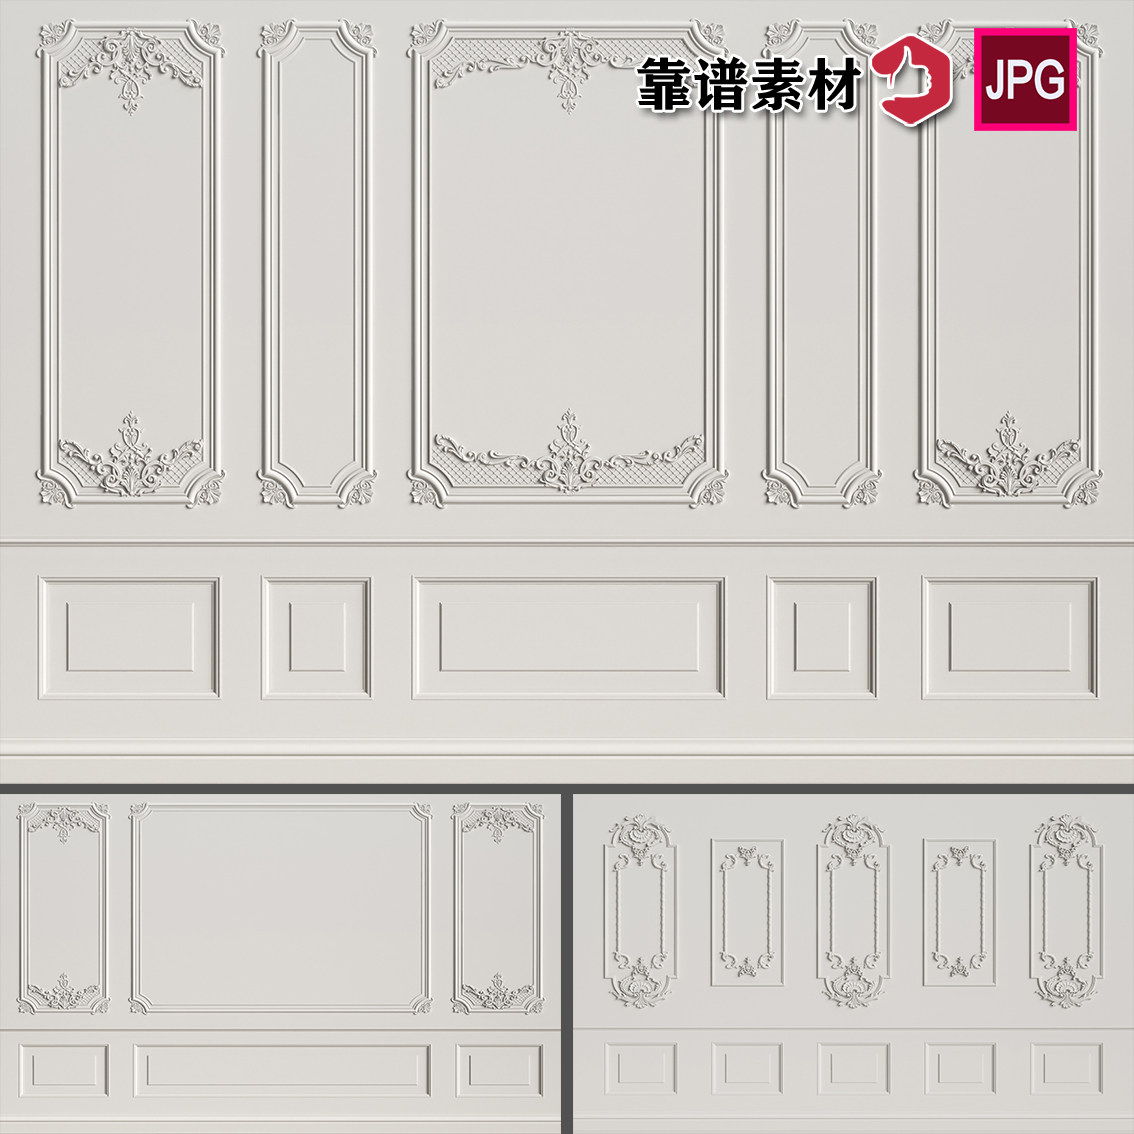 白色欧式哥特式石膏立体浮雕花纹拱门立柱背景图片设计素材三